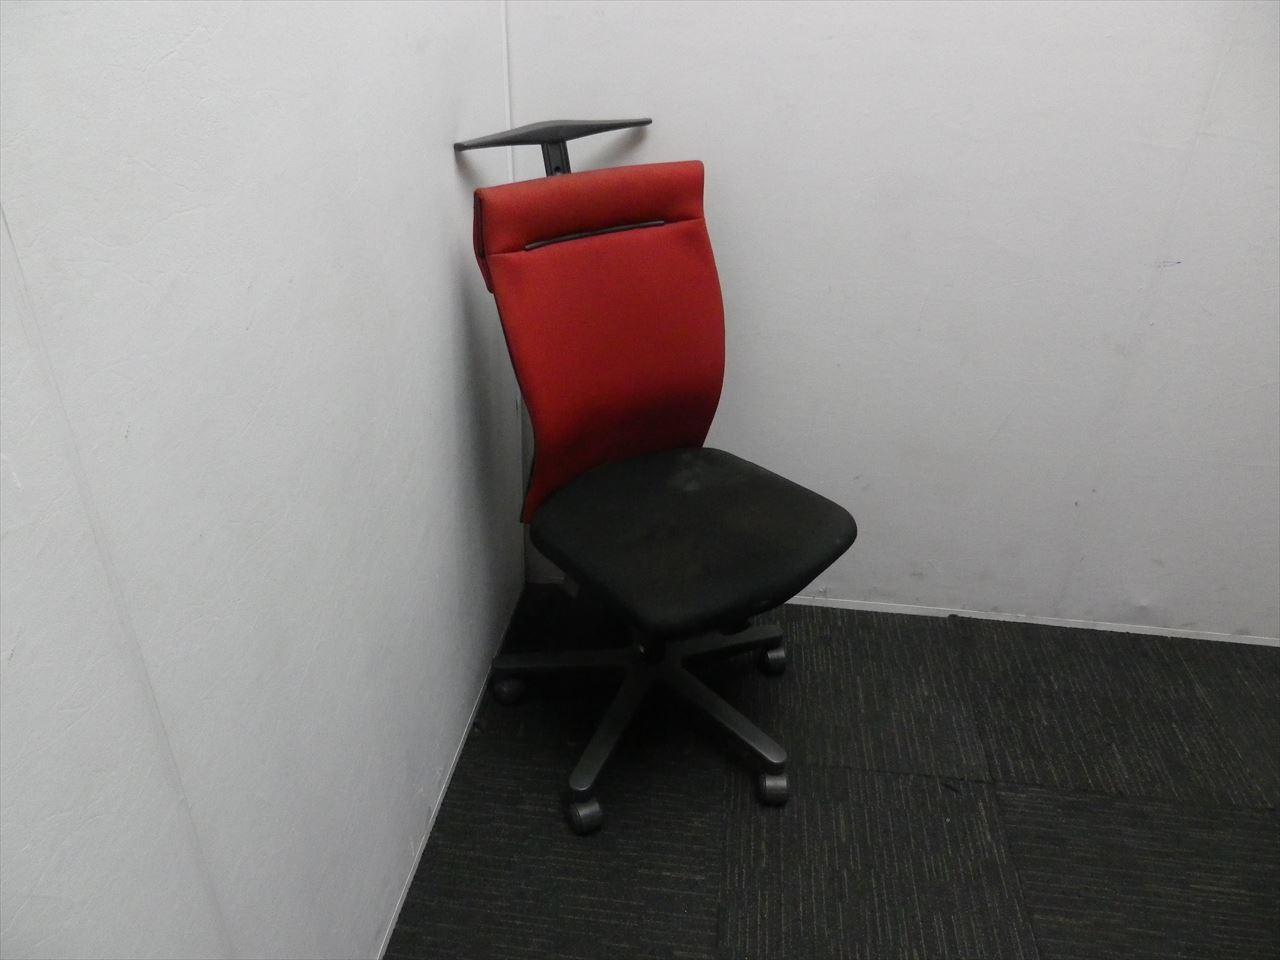 Kokuyo Office Chair